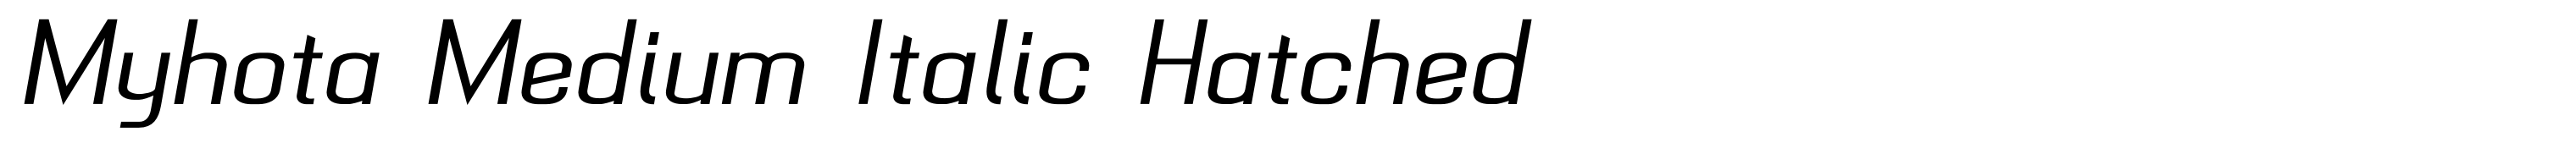 Myhota Medium Italic Hatched